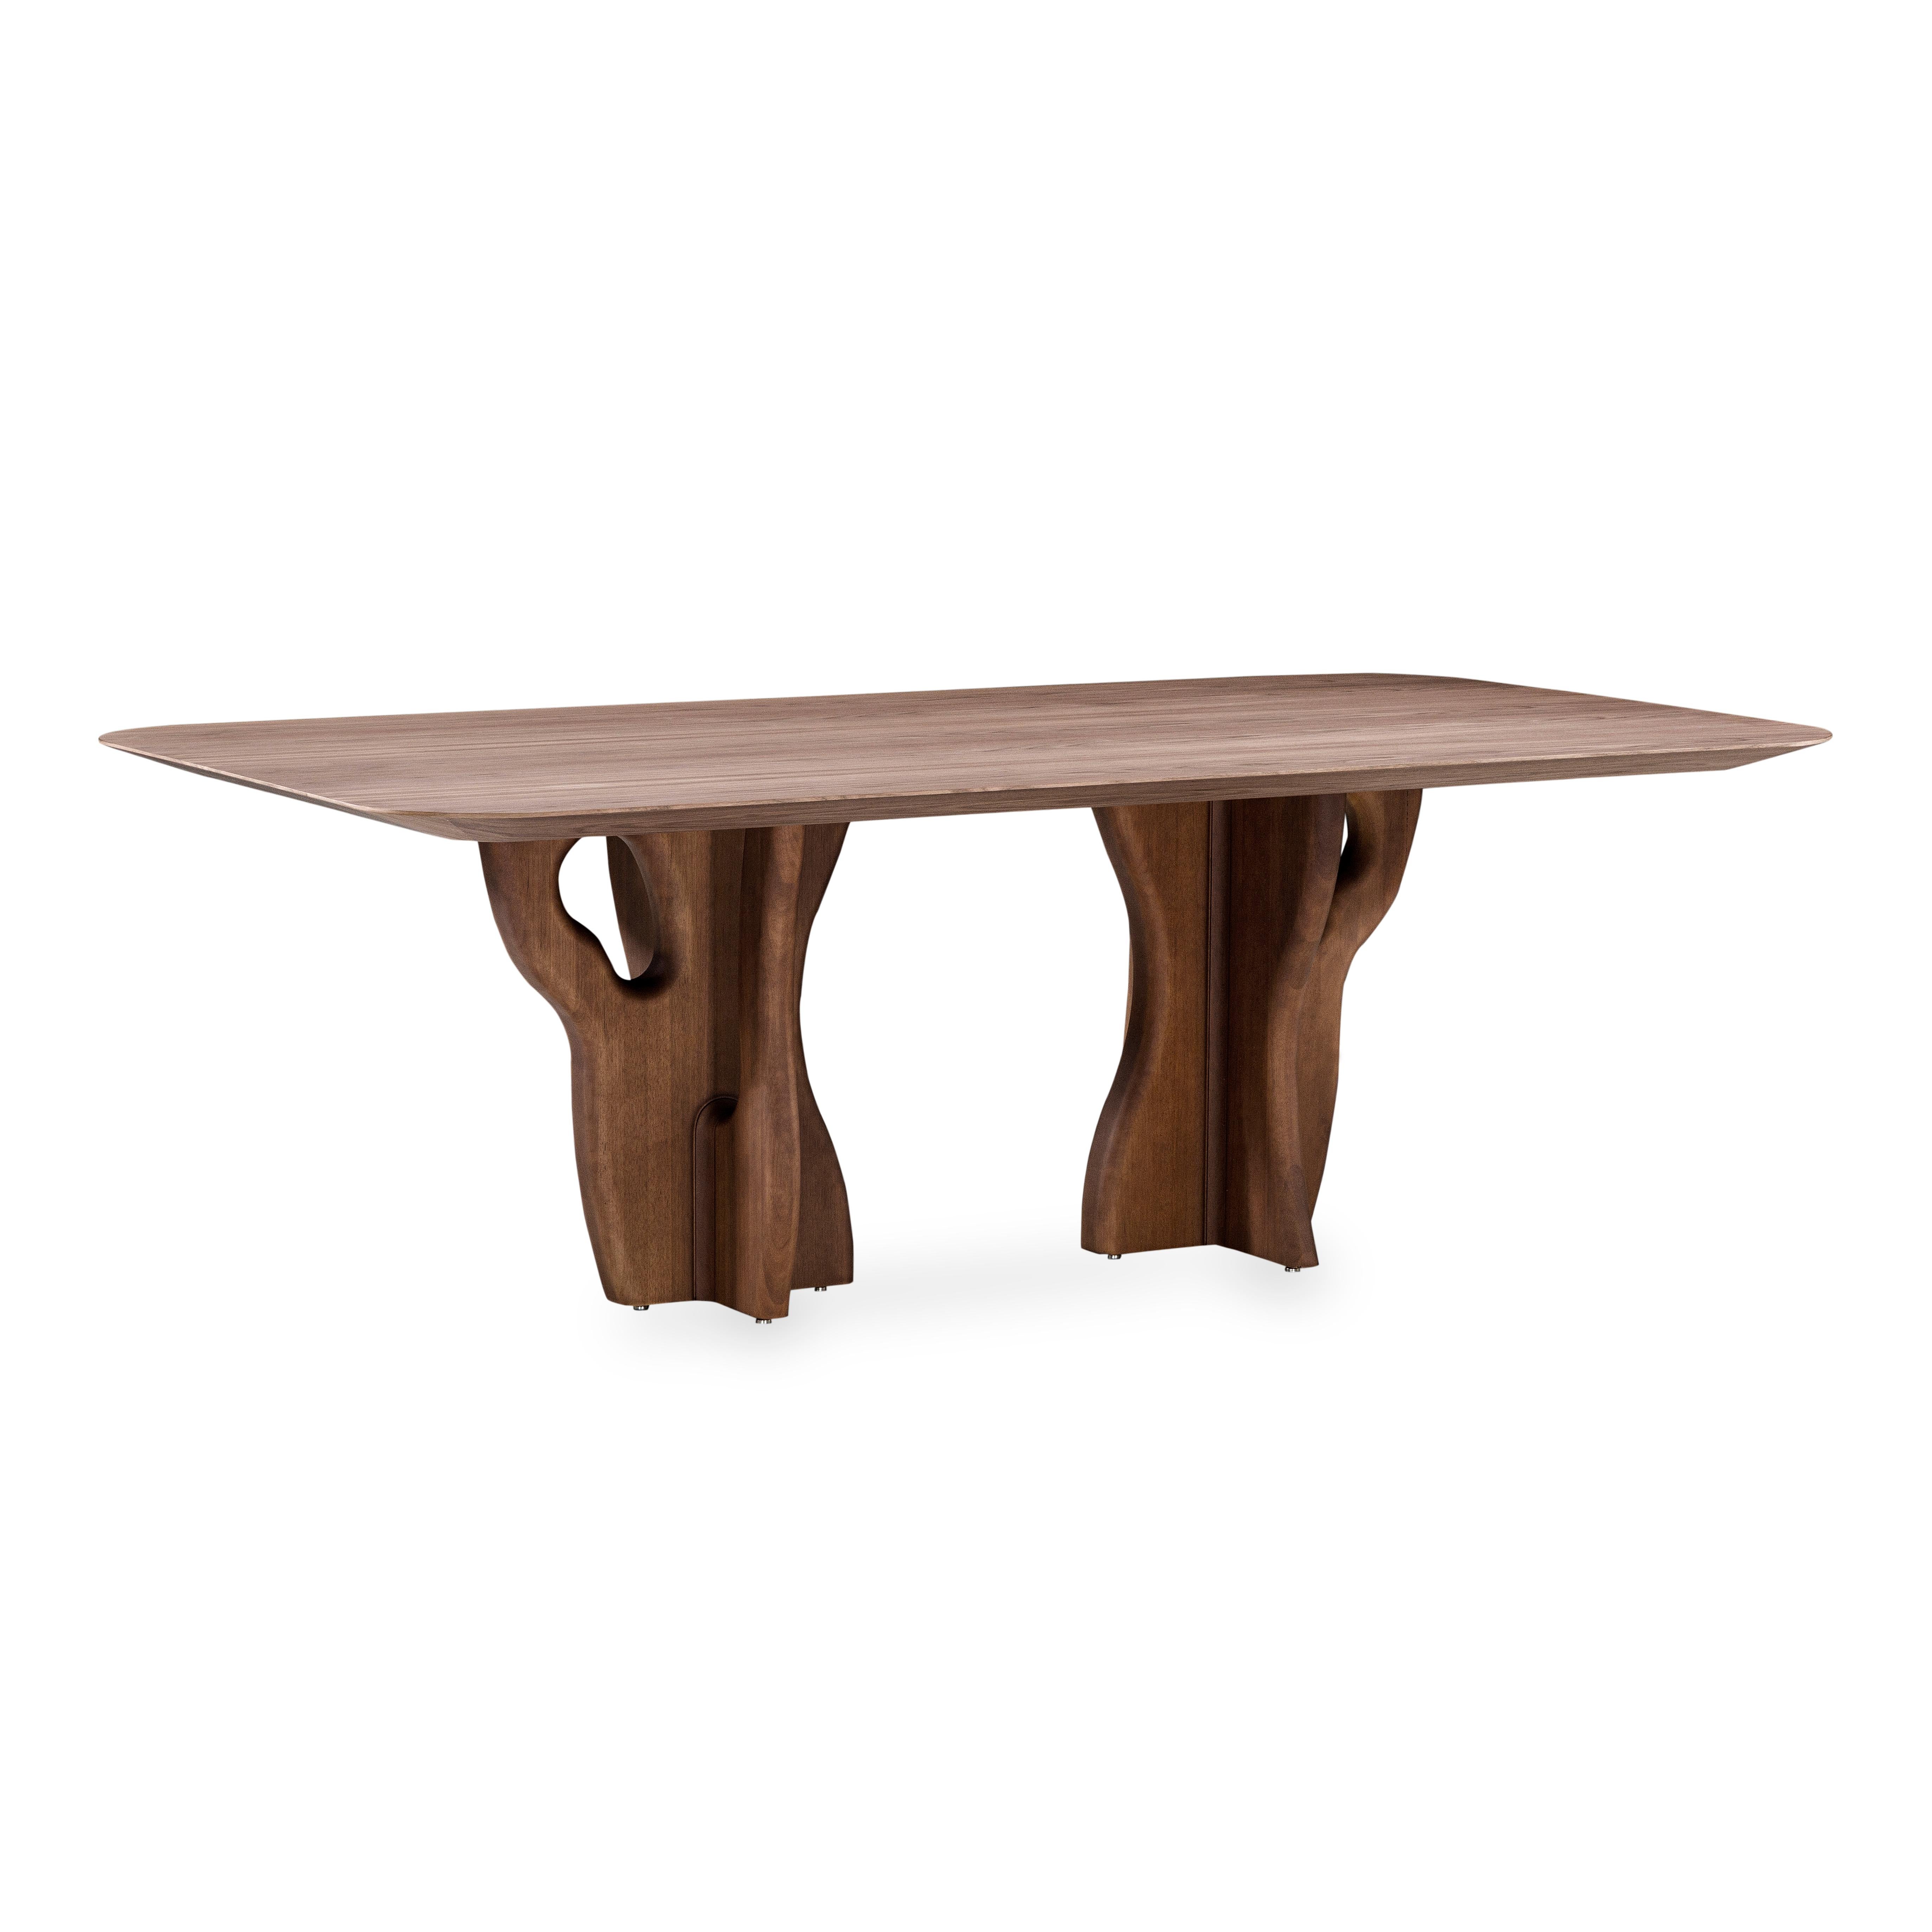 L'équipe de design d'Uultis a fabriqué la table de salle à manger Suma avec un plateau en finition plaquée noyer et des pieds en bois massif organique, parfaits pour votre espace de salle à manger rêvé. Il s'agit d'une pièce conçue pour être